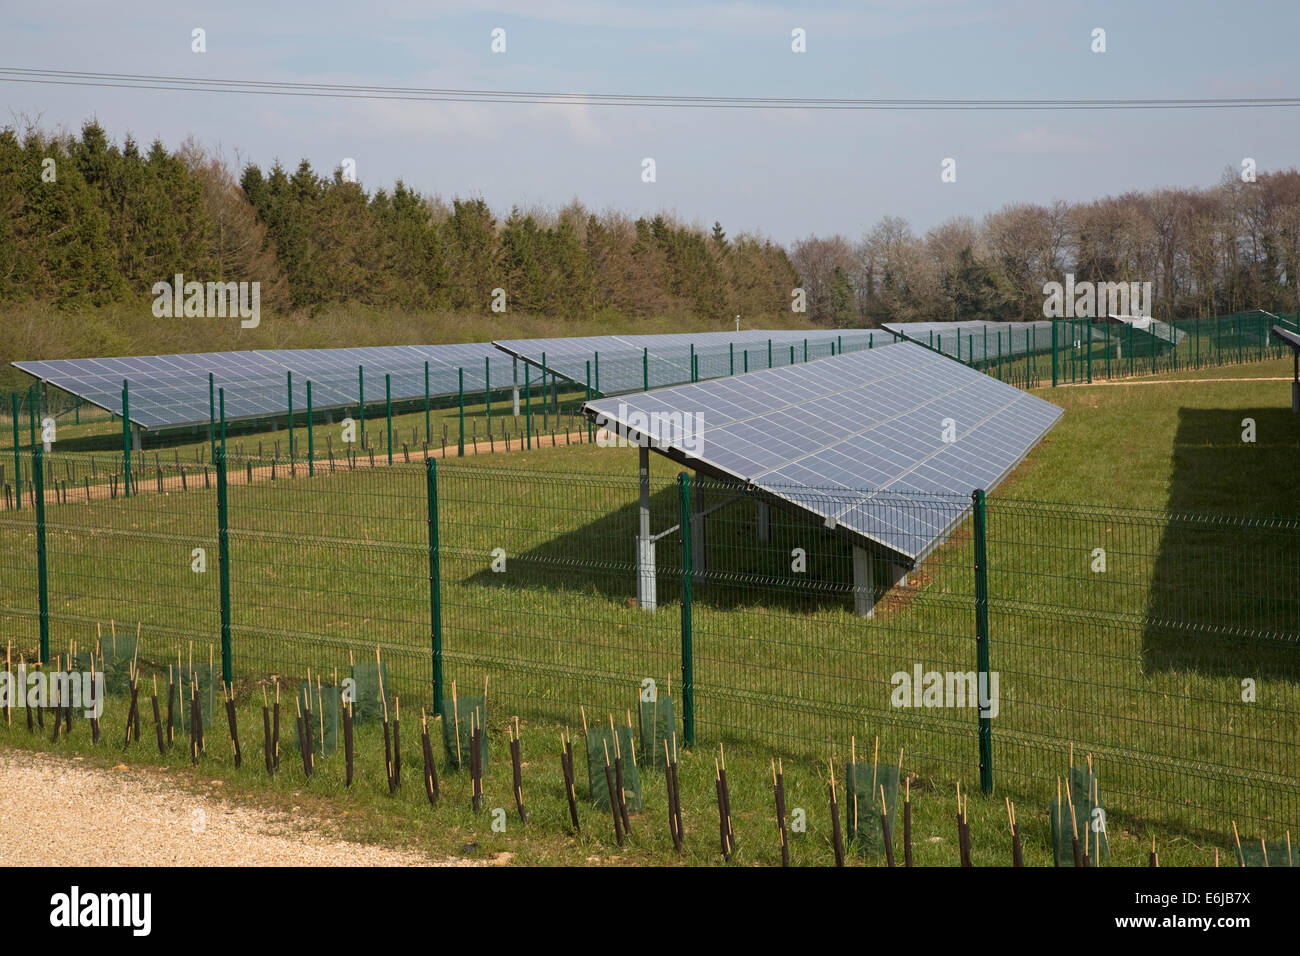 Domaine de la ferme solaire photovoltaïque panneaux photovoltaïques près de Chipping Campden Glos UK Banque D'Images